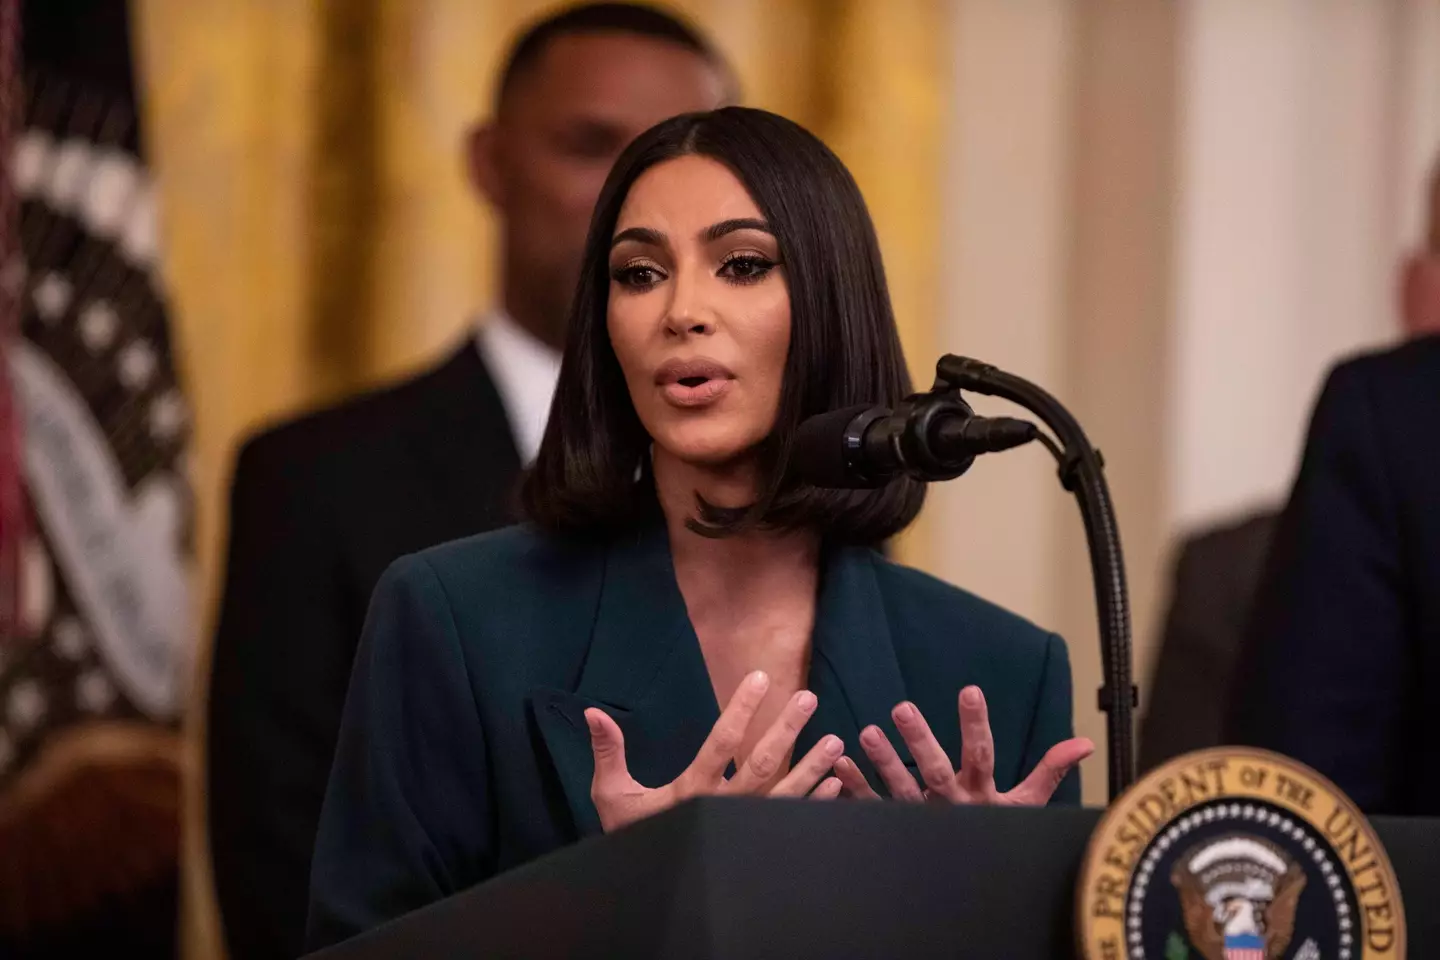 Kim Kardashian at the White House in 2019. (